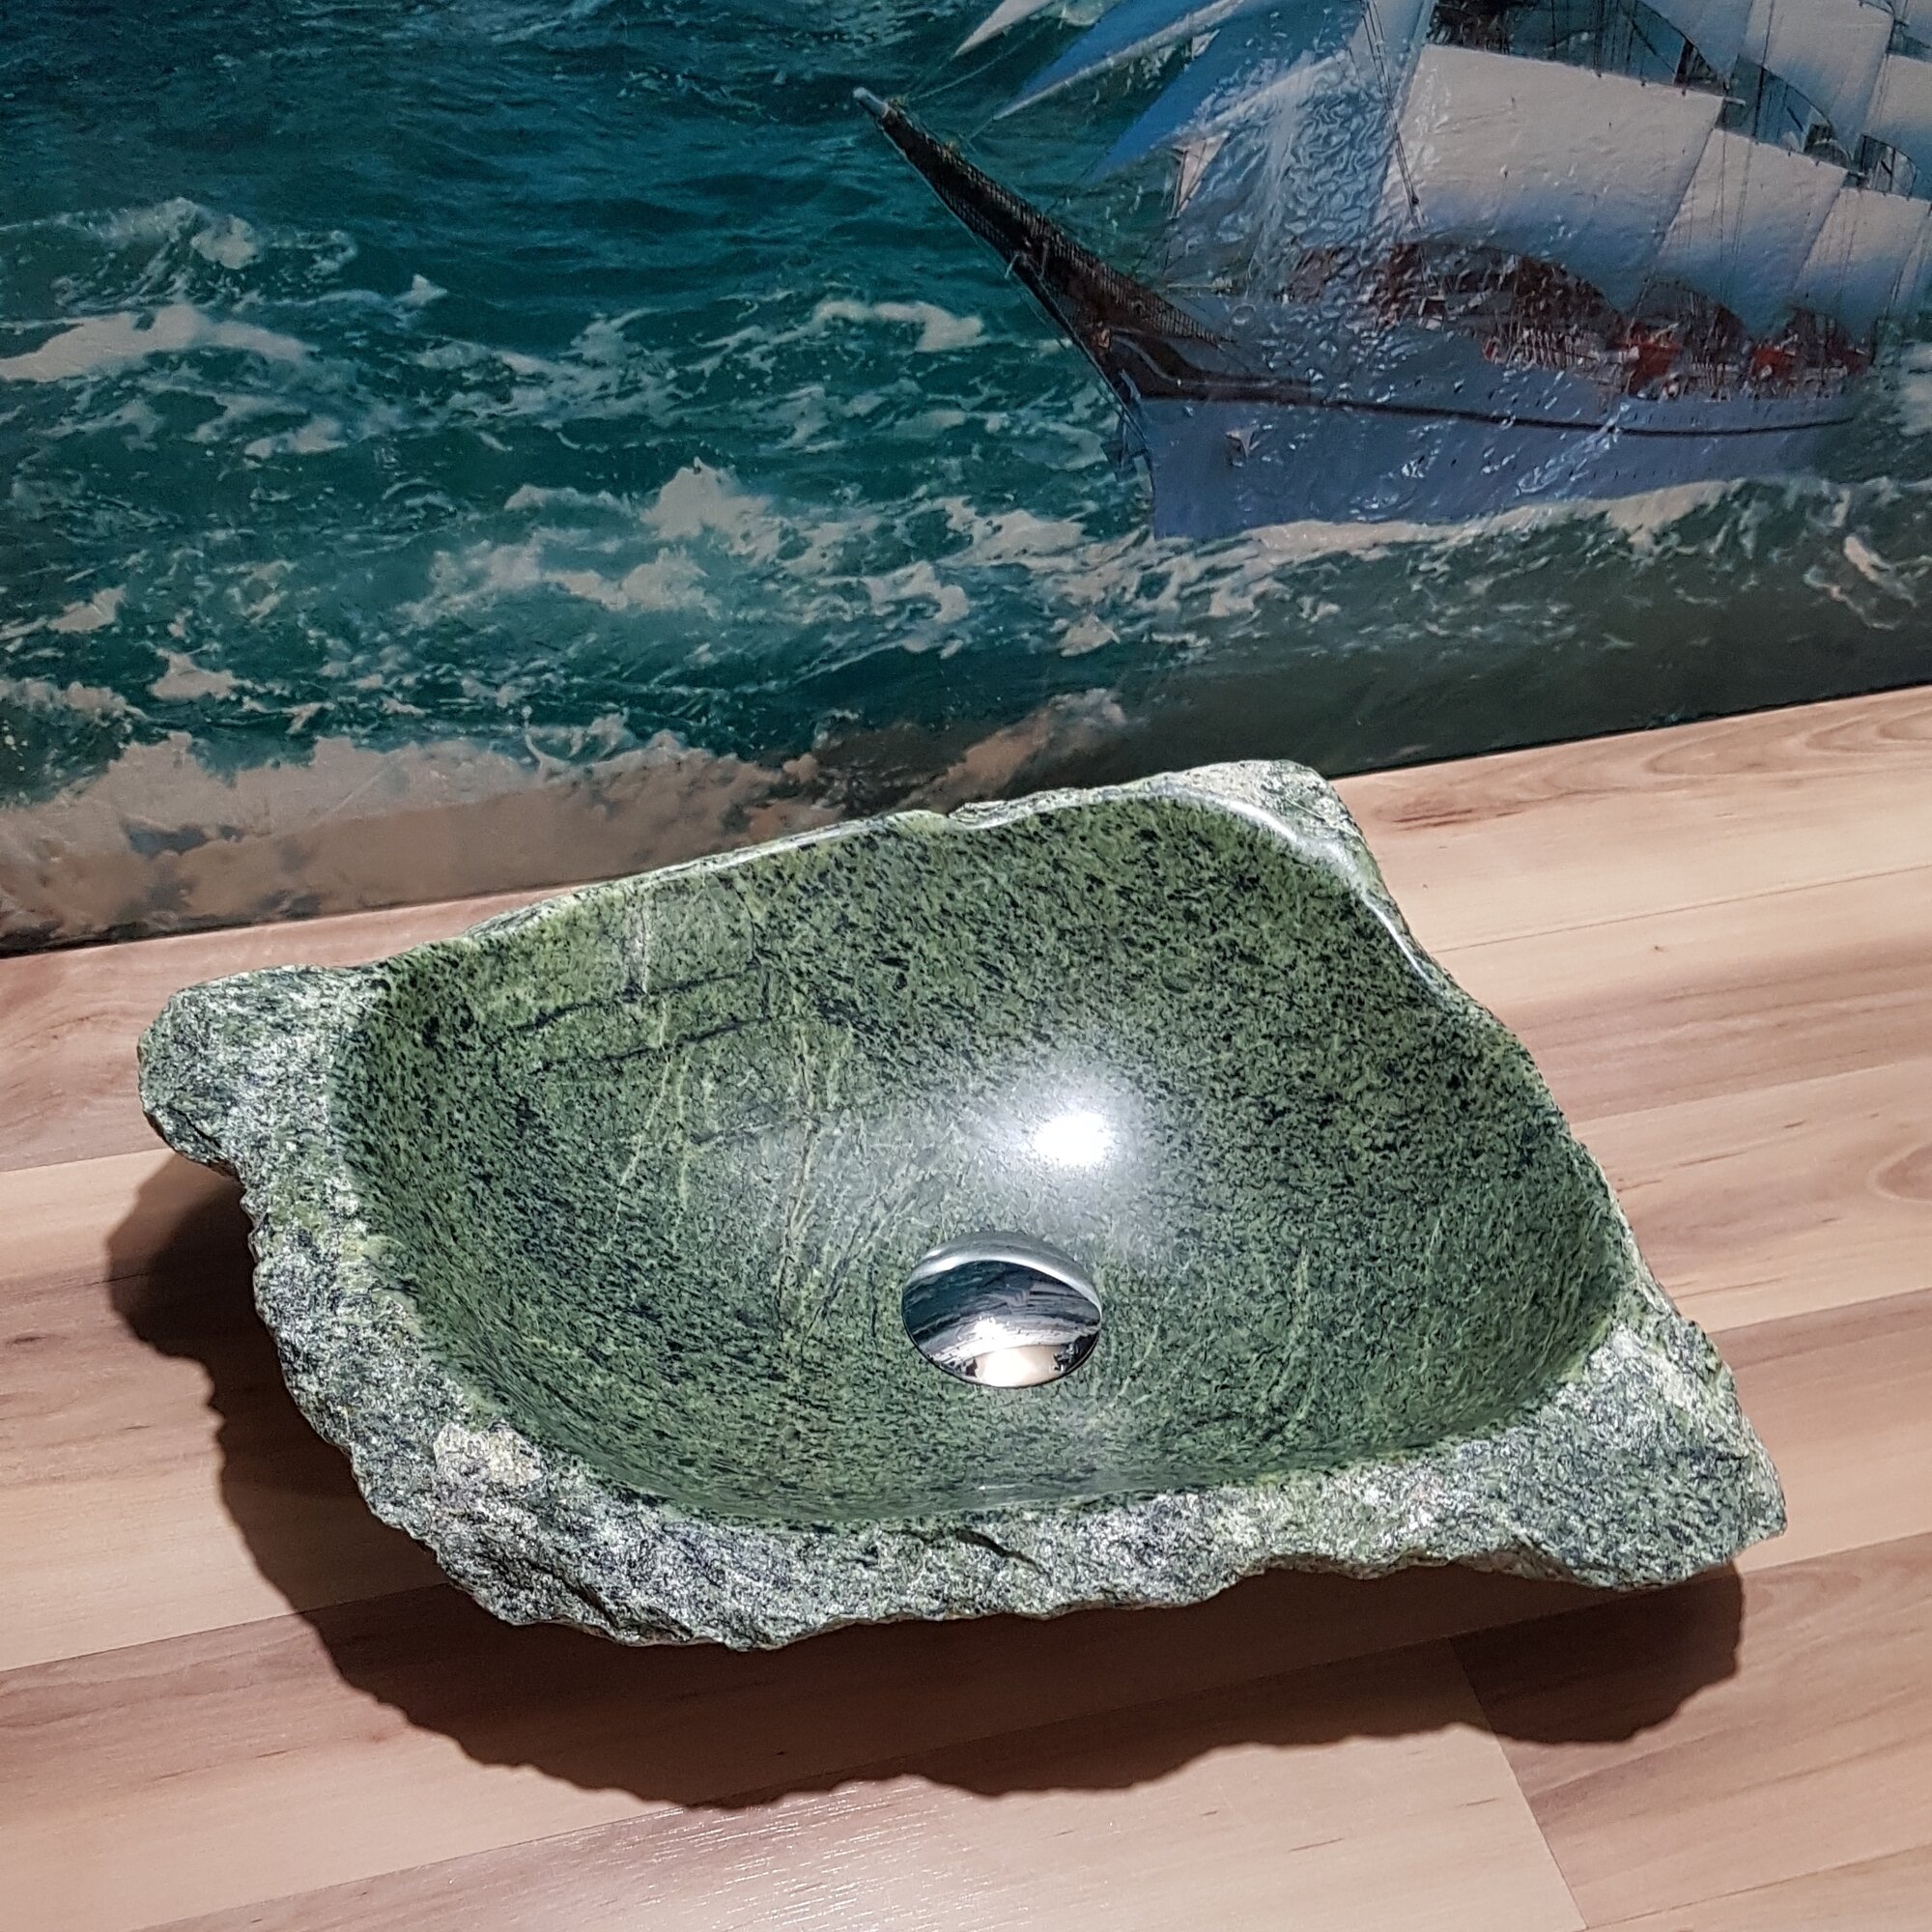 Раковина накладная на столешницу для ванной мойка каменная из натурального /речного/горного камня Кавказа 48х35х11 см